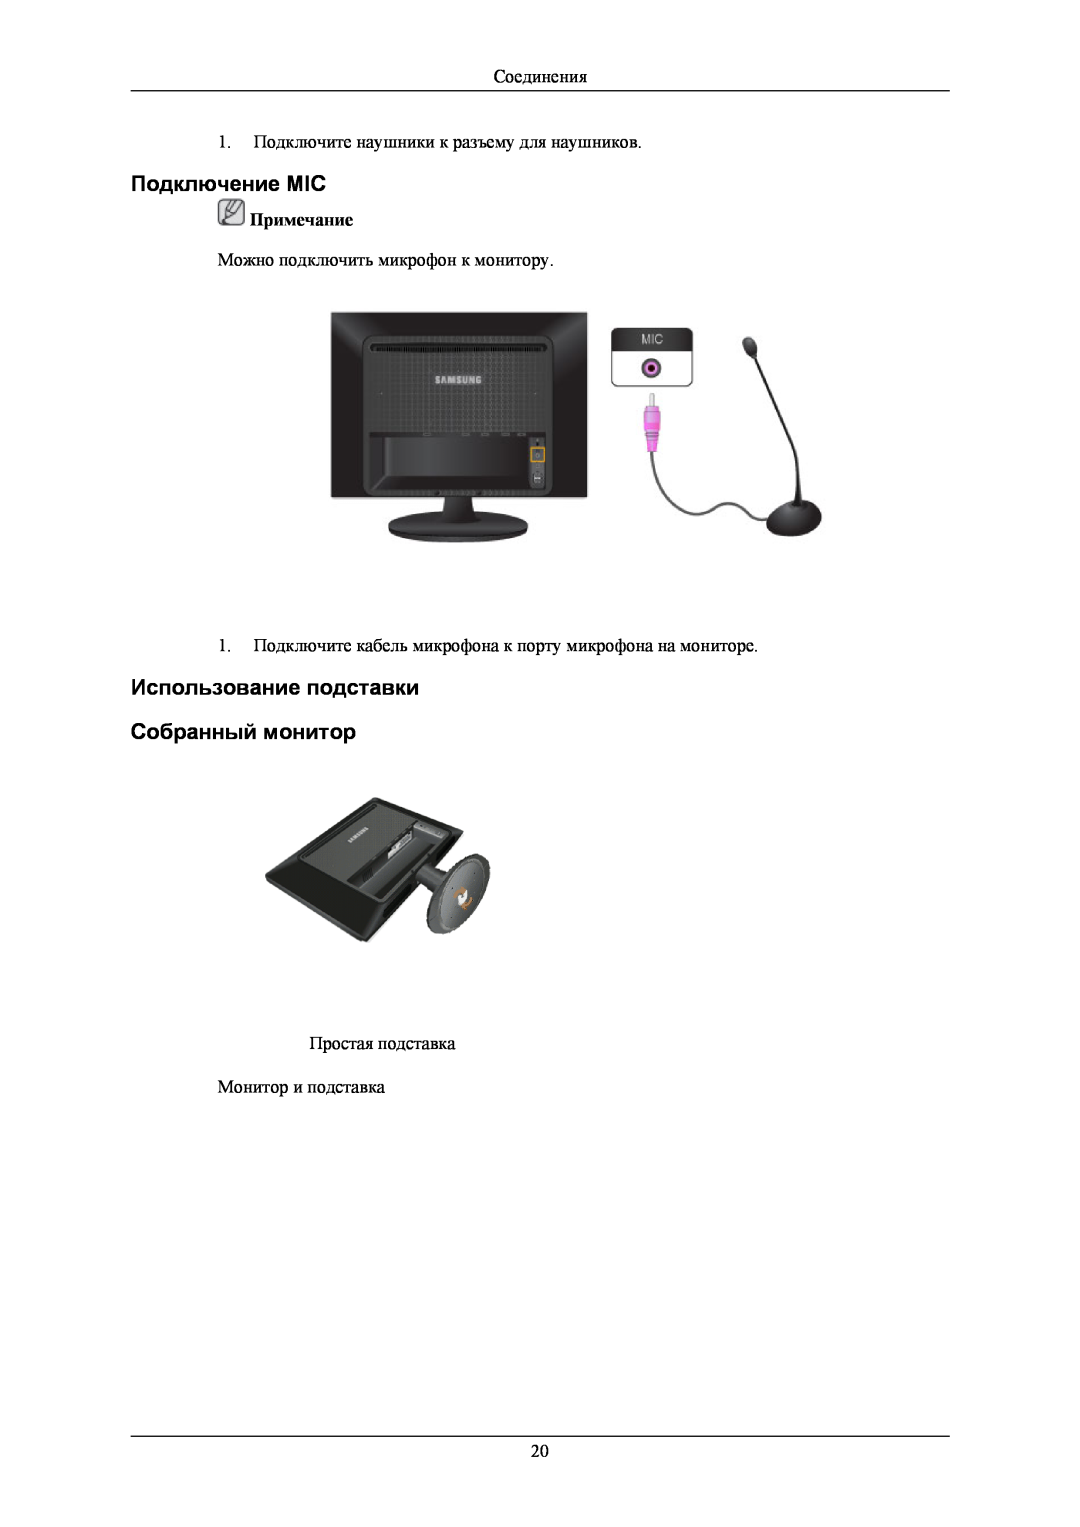 Samsung LS24LIUJFV/EN Подключение MIC, Использование подставки Собранный монитор, Можно подключить микрофон к монитору 